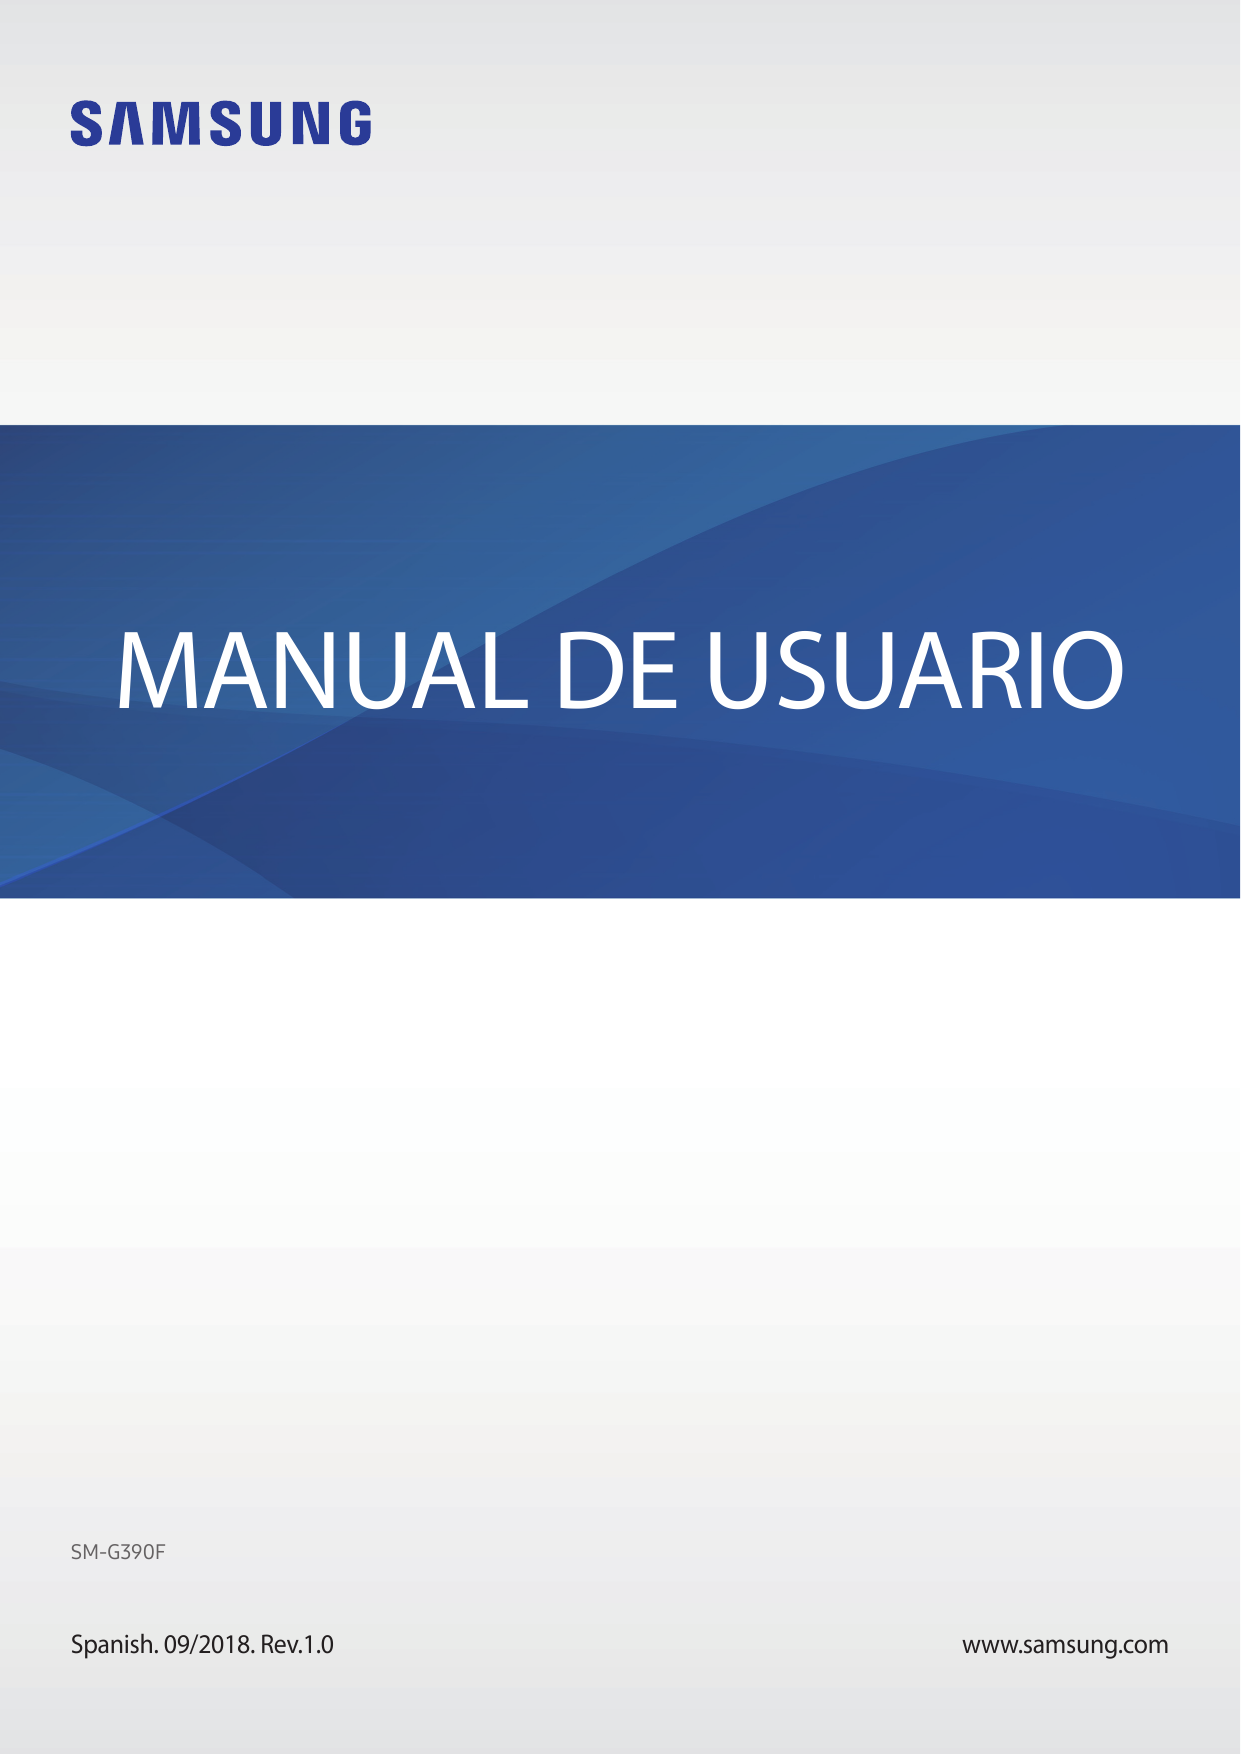 MANUAL DE USUARIOSM-G390FSpanish. 09/2018. Rev.1.0www.samsung.com